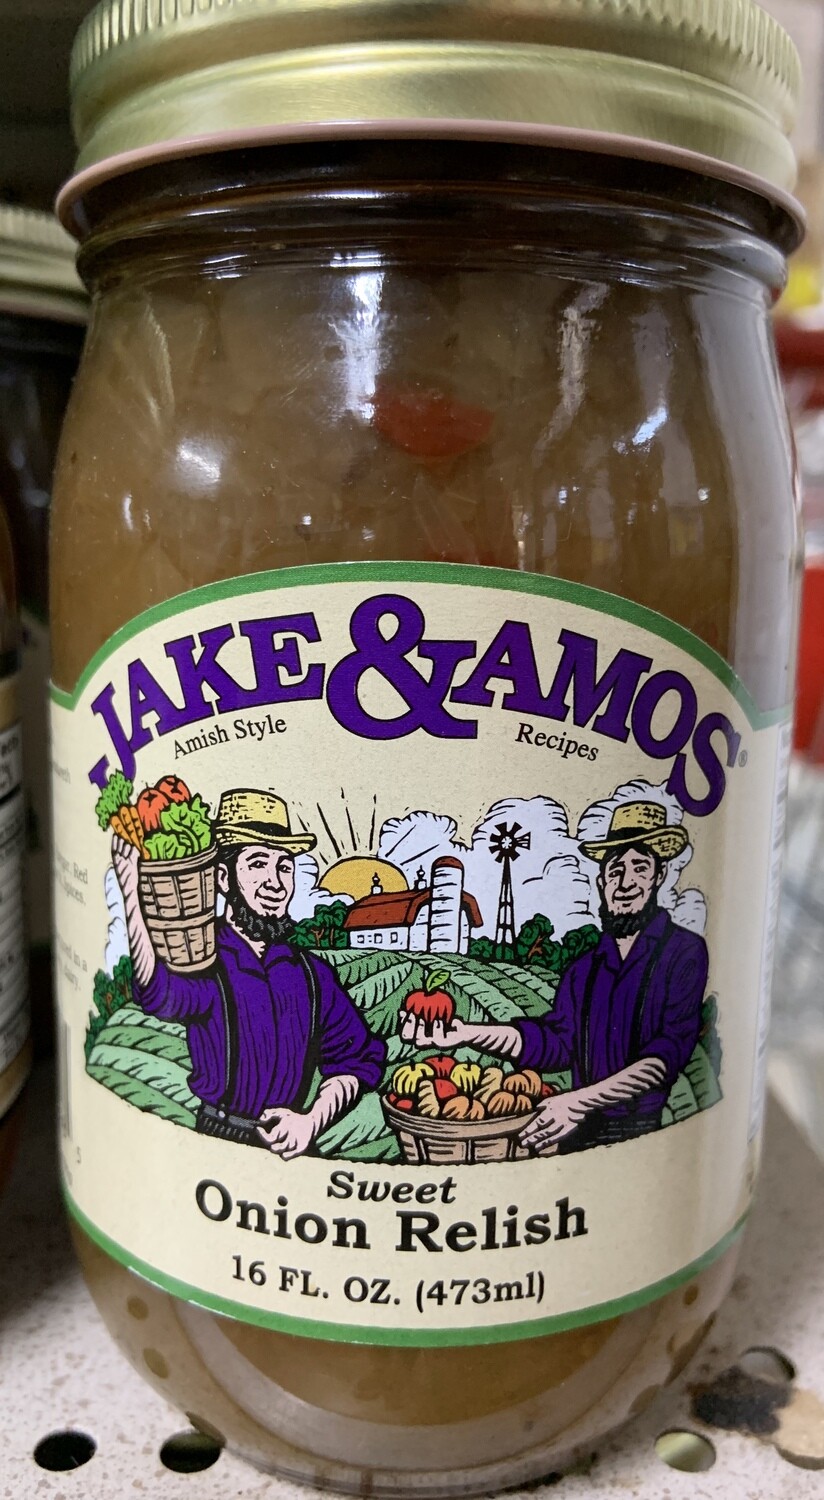 Jake & Amos Sweet Onion Relish 16 oz